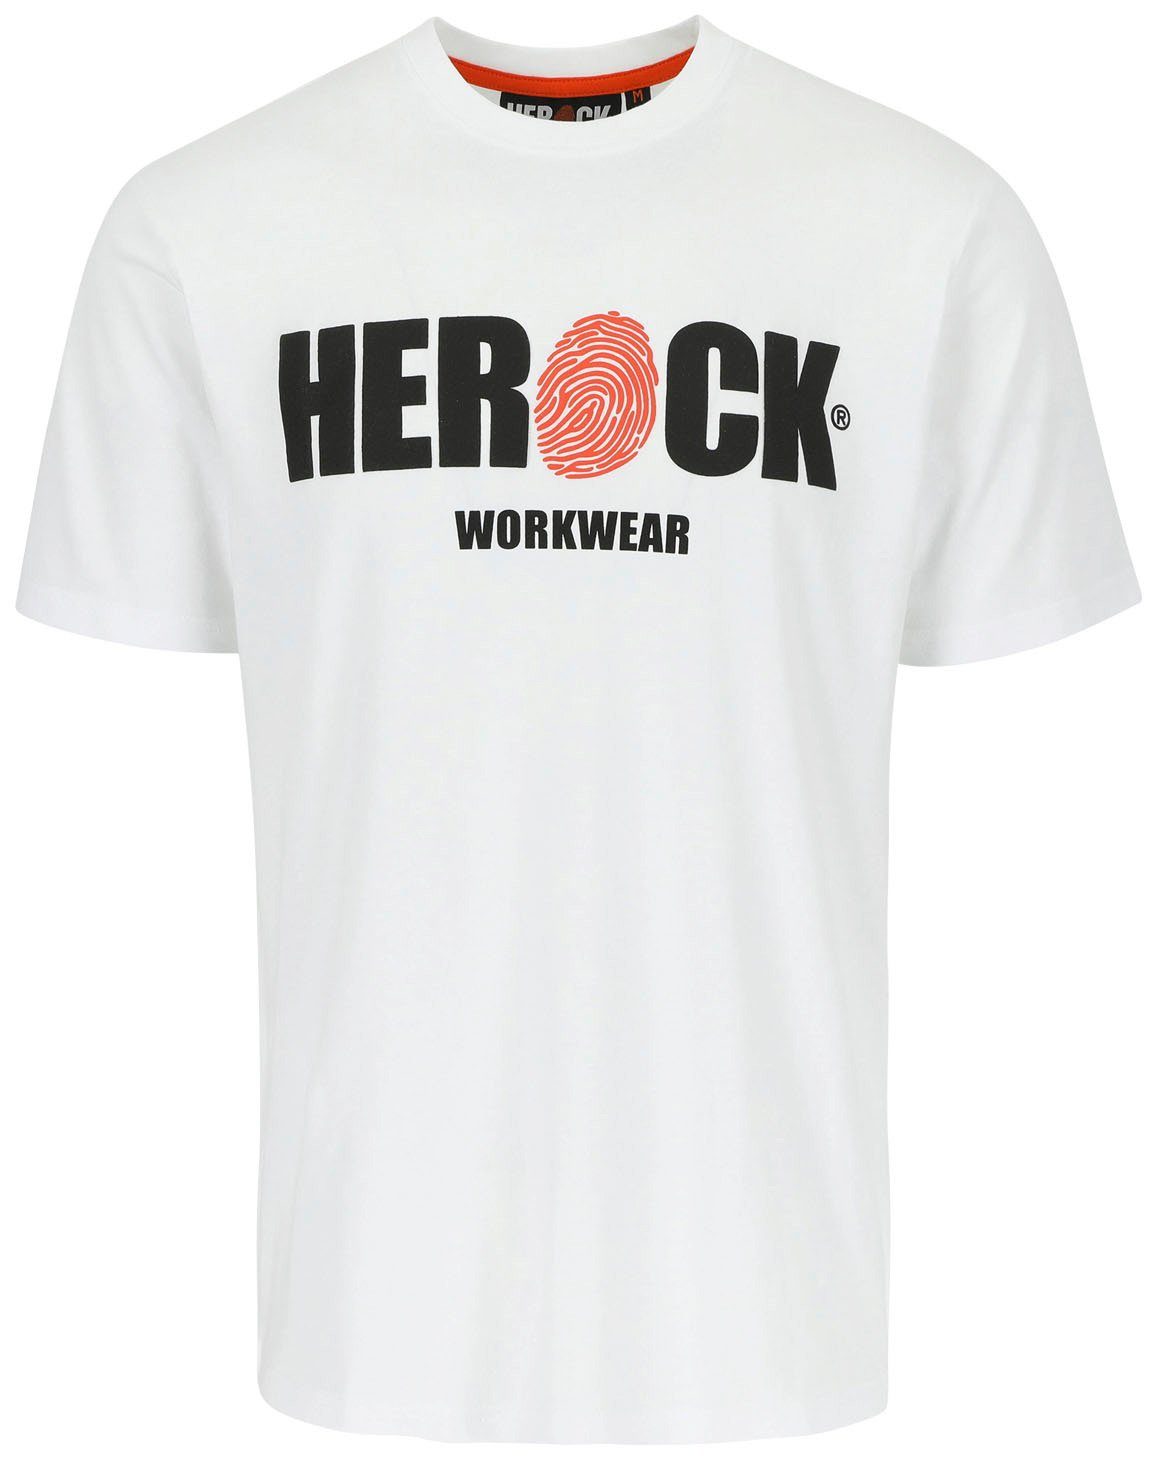 Tragegefühl Baumwolle, Herock®-Aufdruck, Rundhals, weiß mit angenehmes T-Shirt Herock ENI